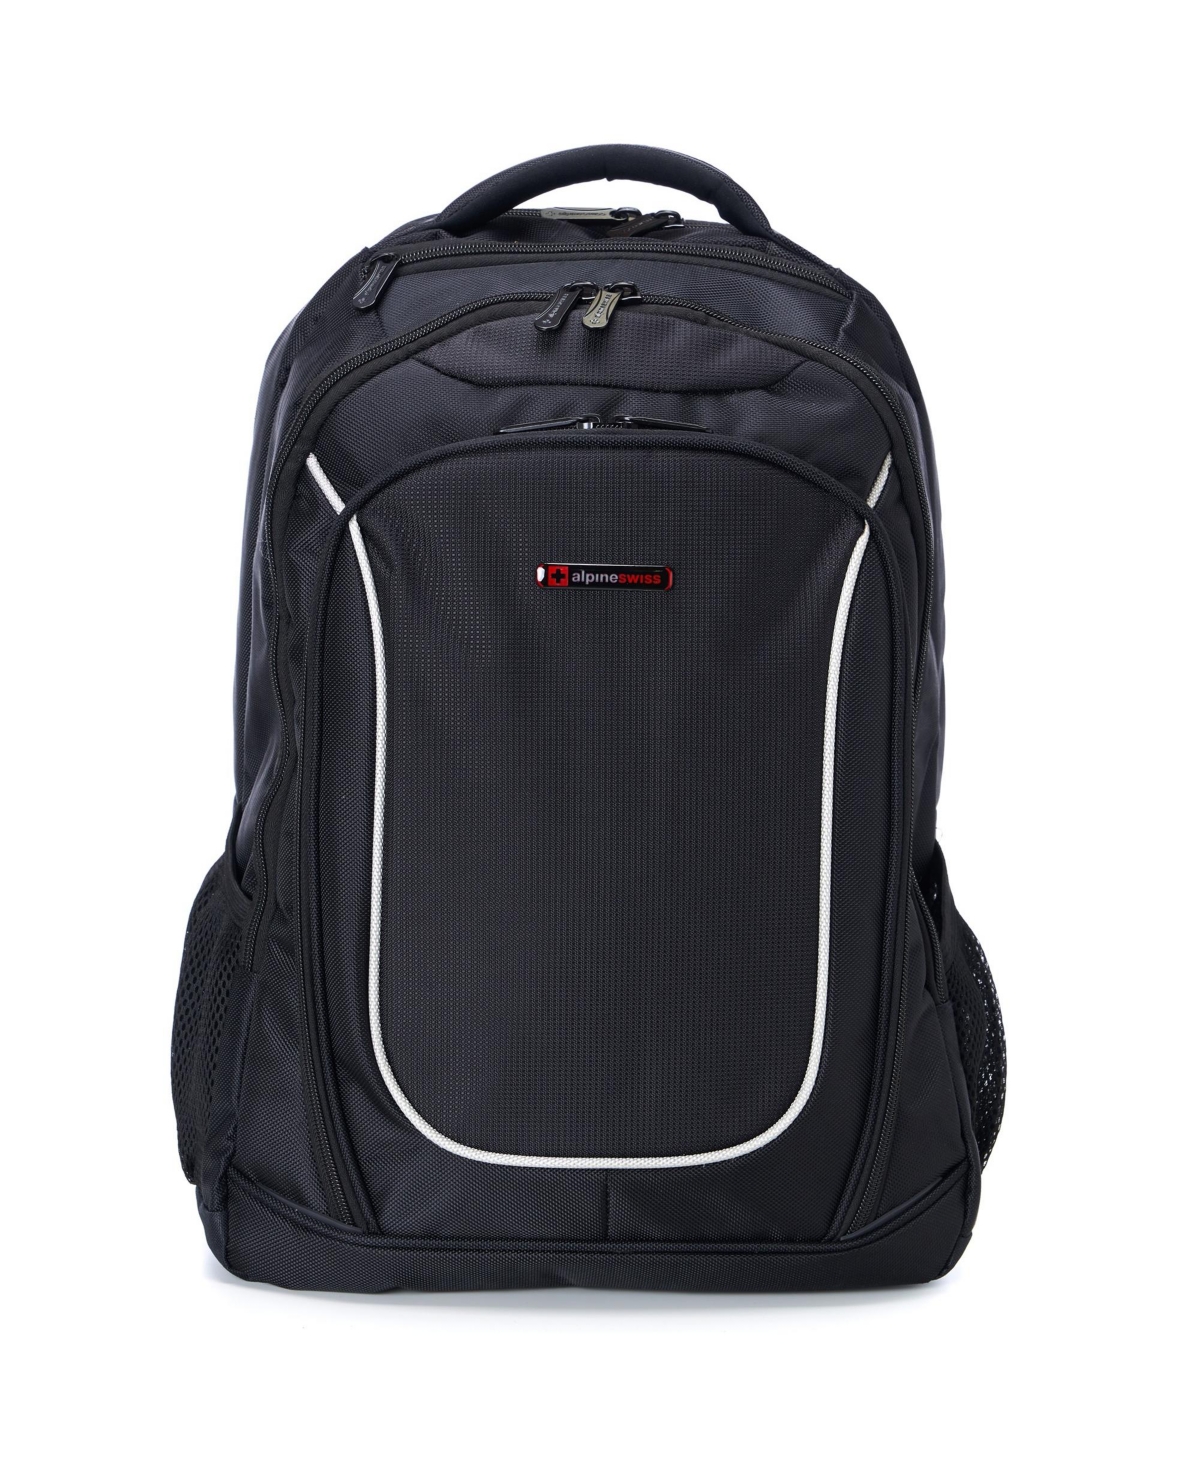 15.6" Laptop Backpack Book Bag Notebook Case Computer Back Pack - Black